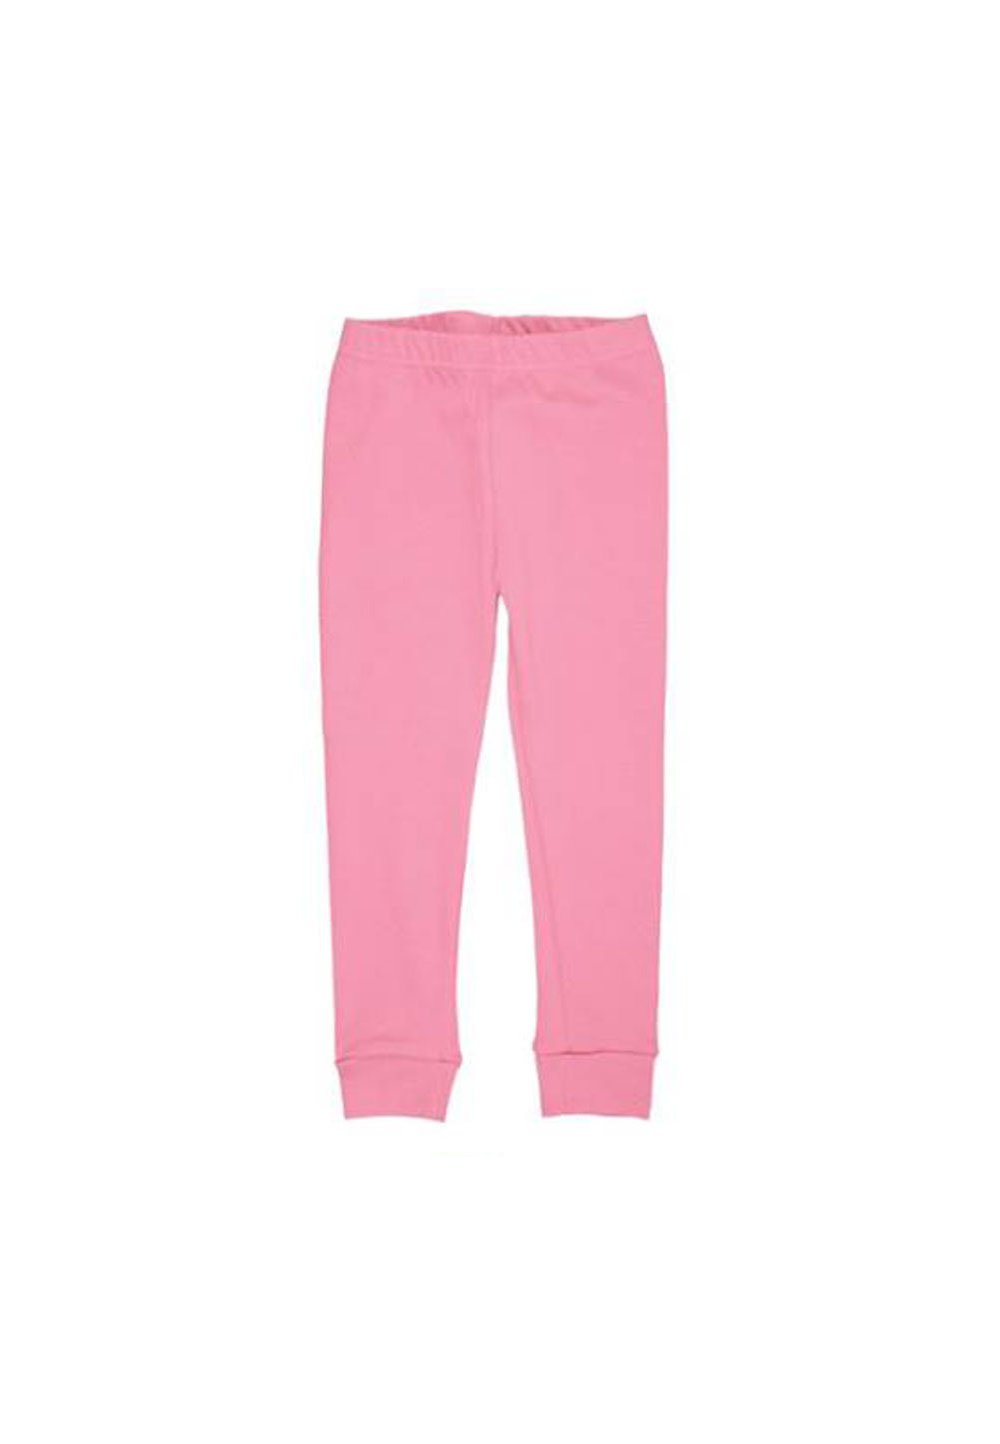 Pantaloni pijama, roz deschis imagine